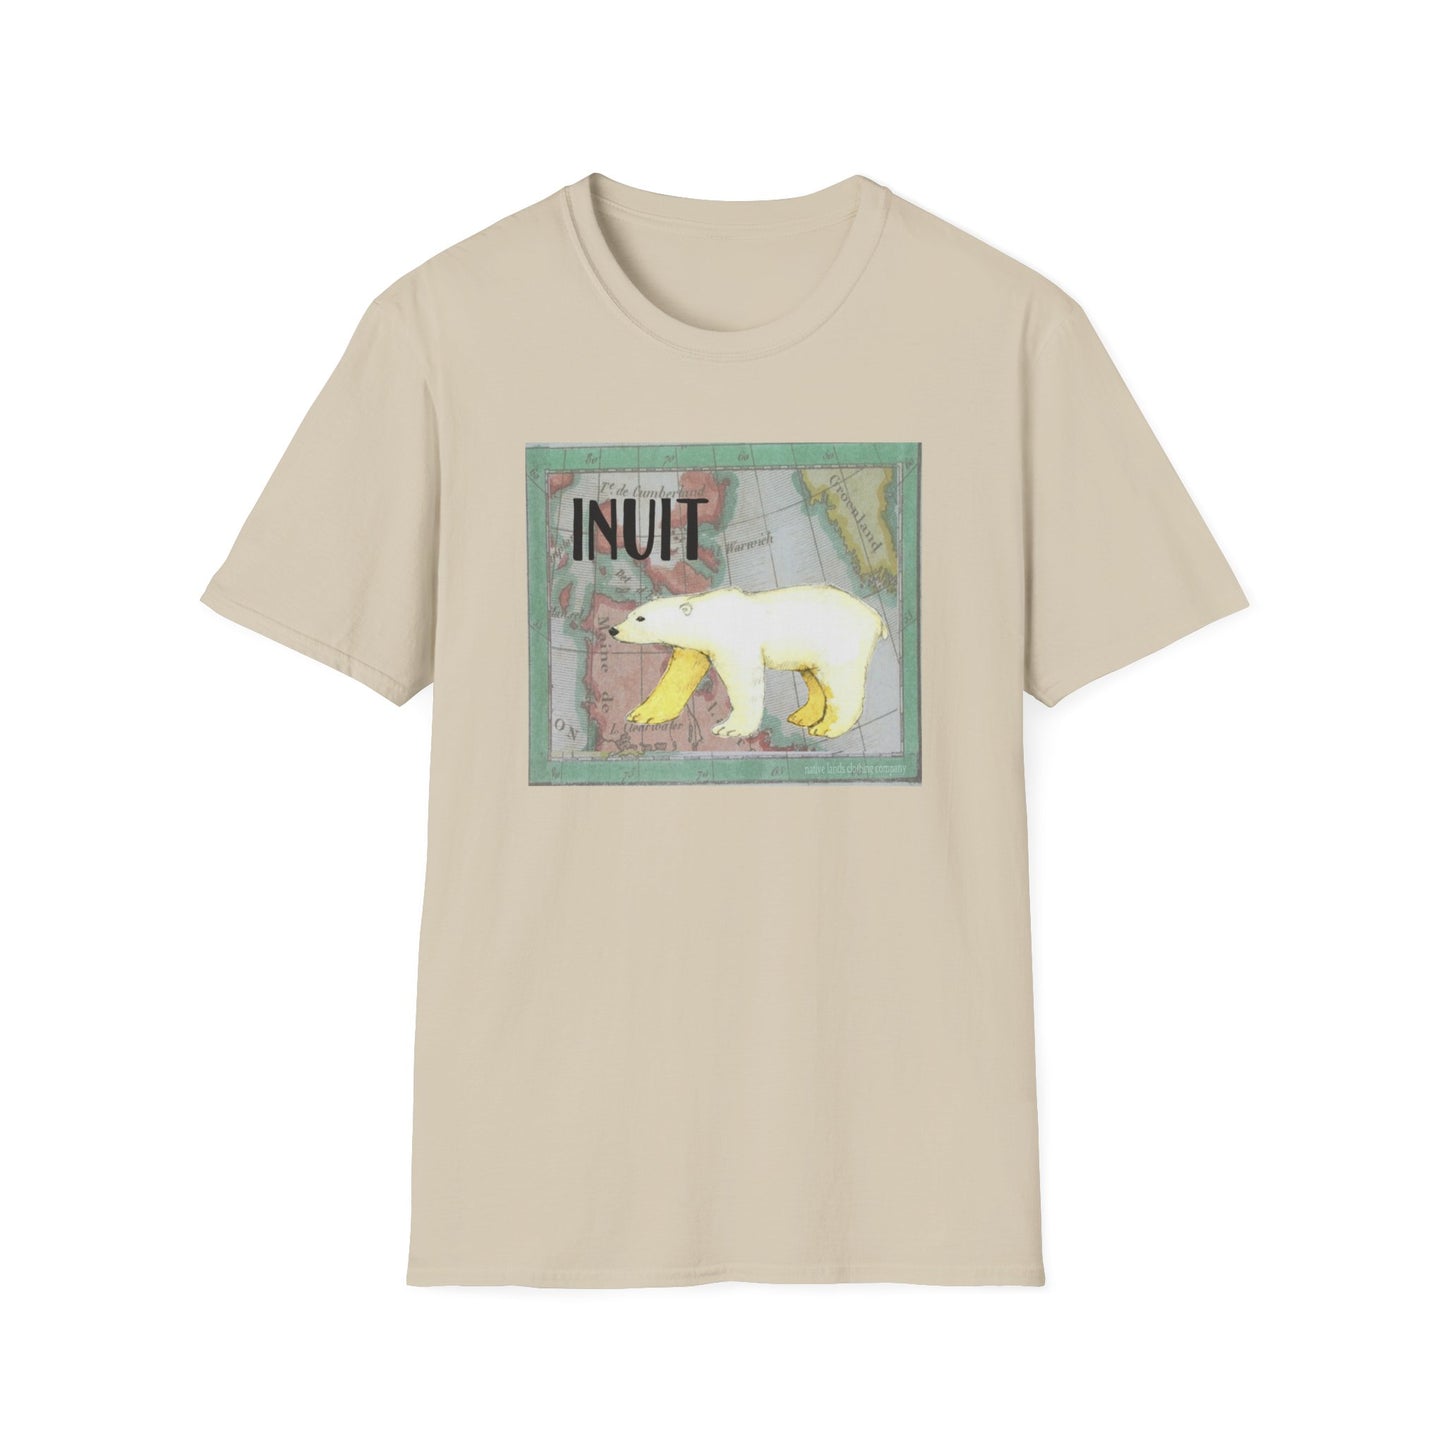 Inuit-Stamm-Shirt, Eisbär, Baumwolle, Indianer